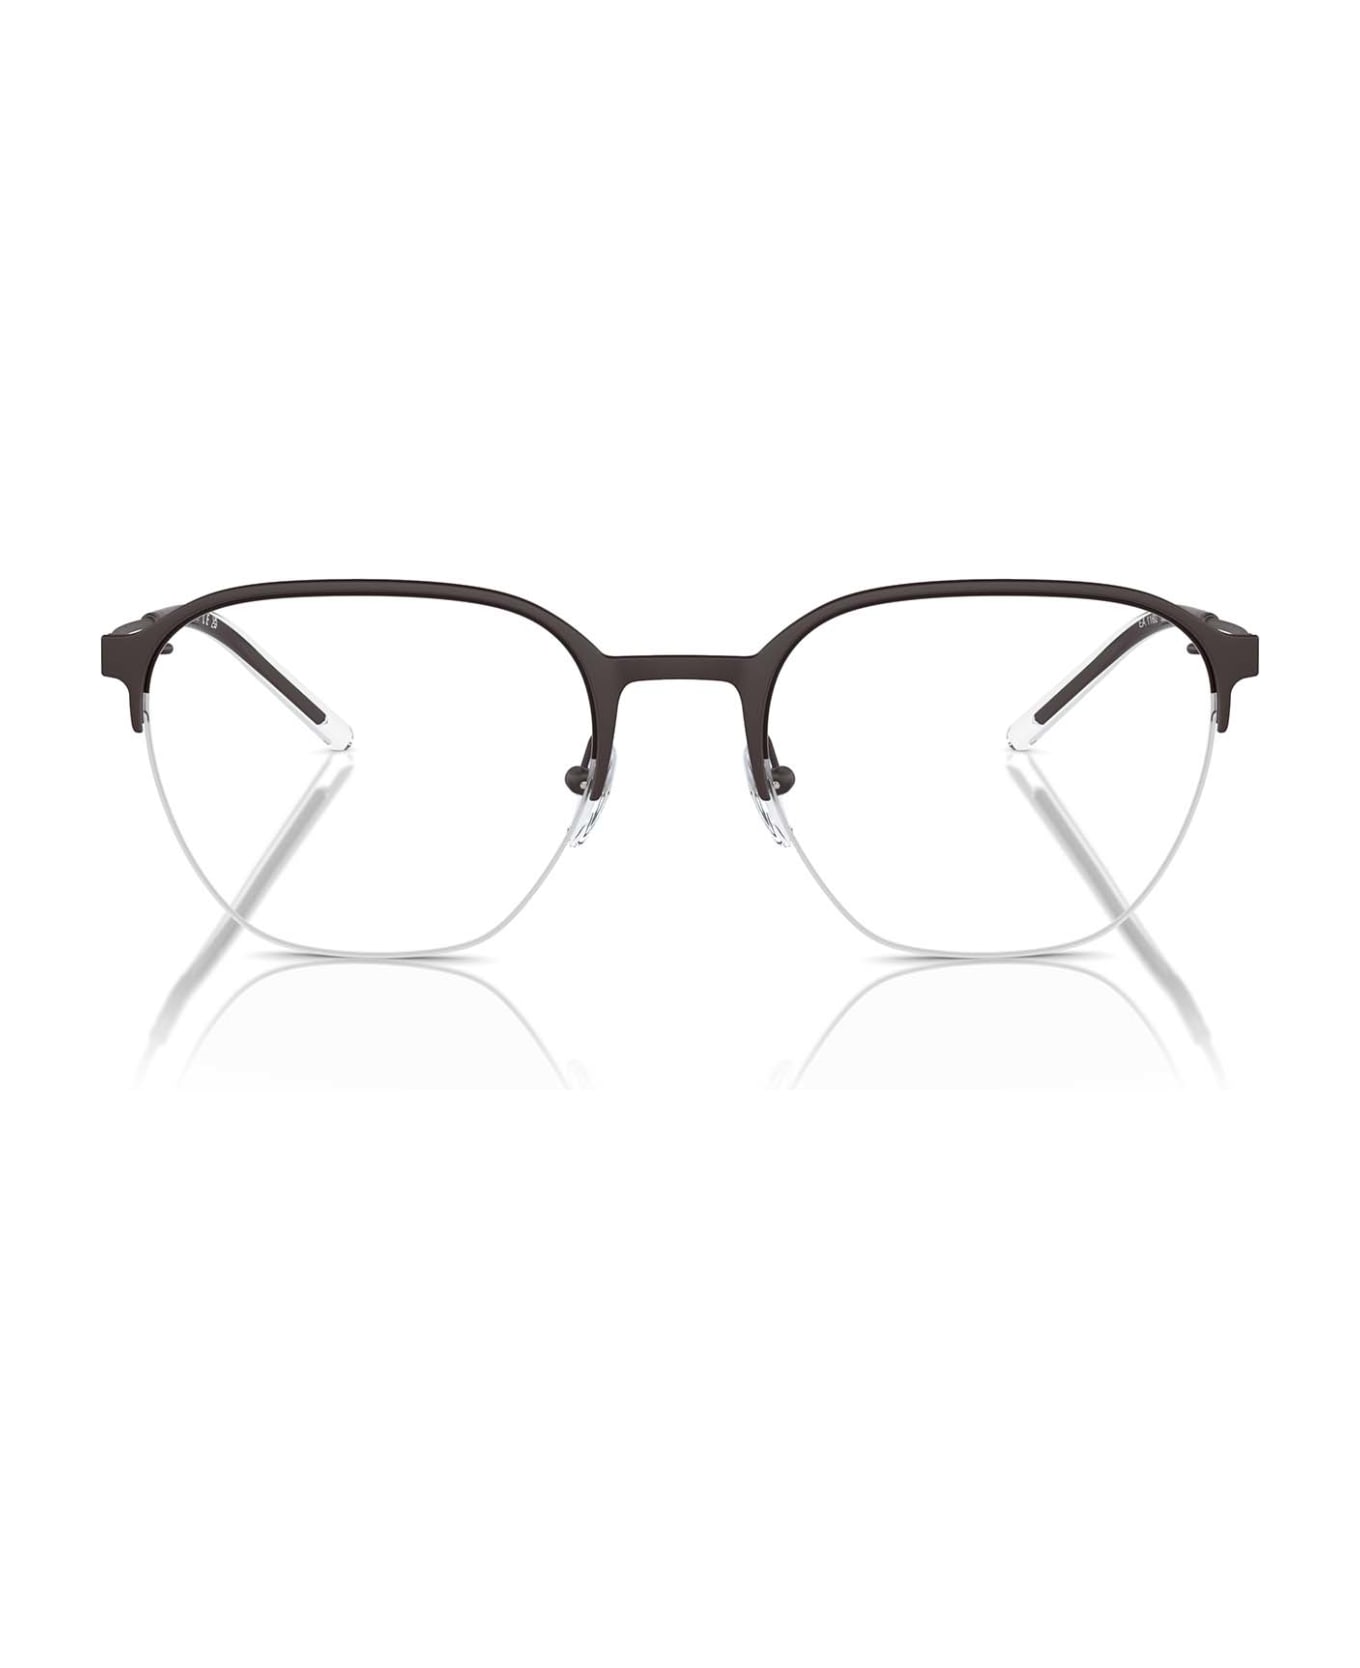 Emporio Armani Ea1160 Matte Brown Glasses - Matte Brown アイウェア